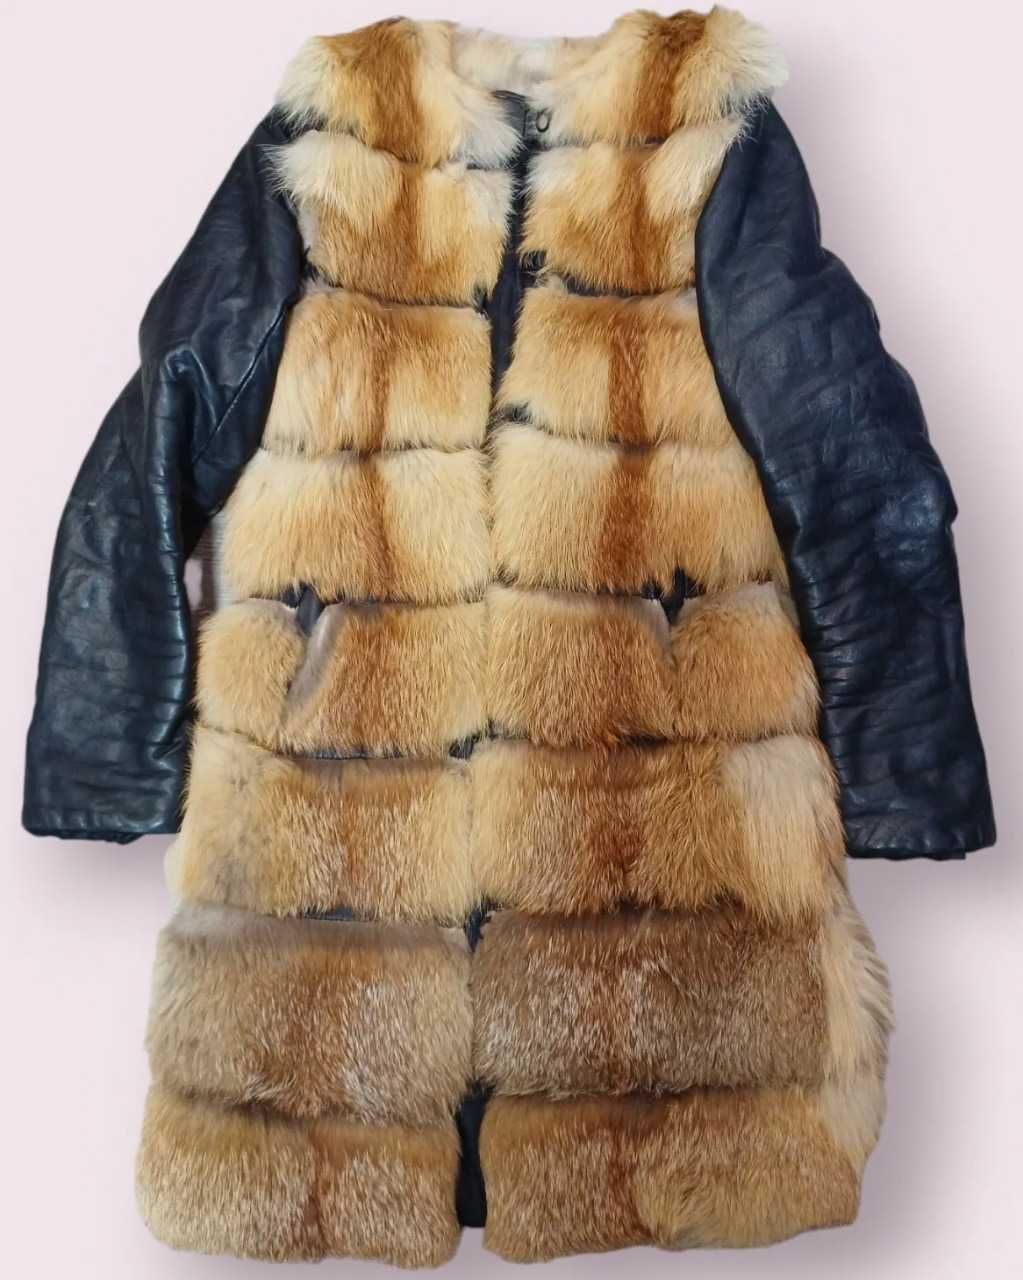 Меховая куртка-жилетка из рыжей лисы